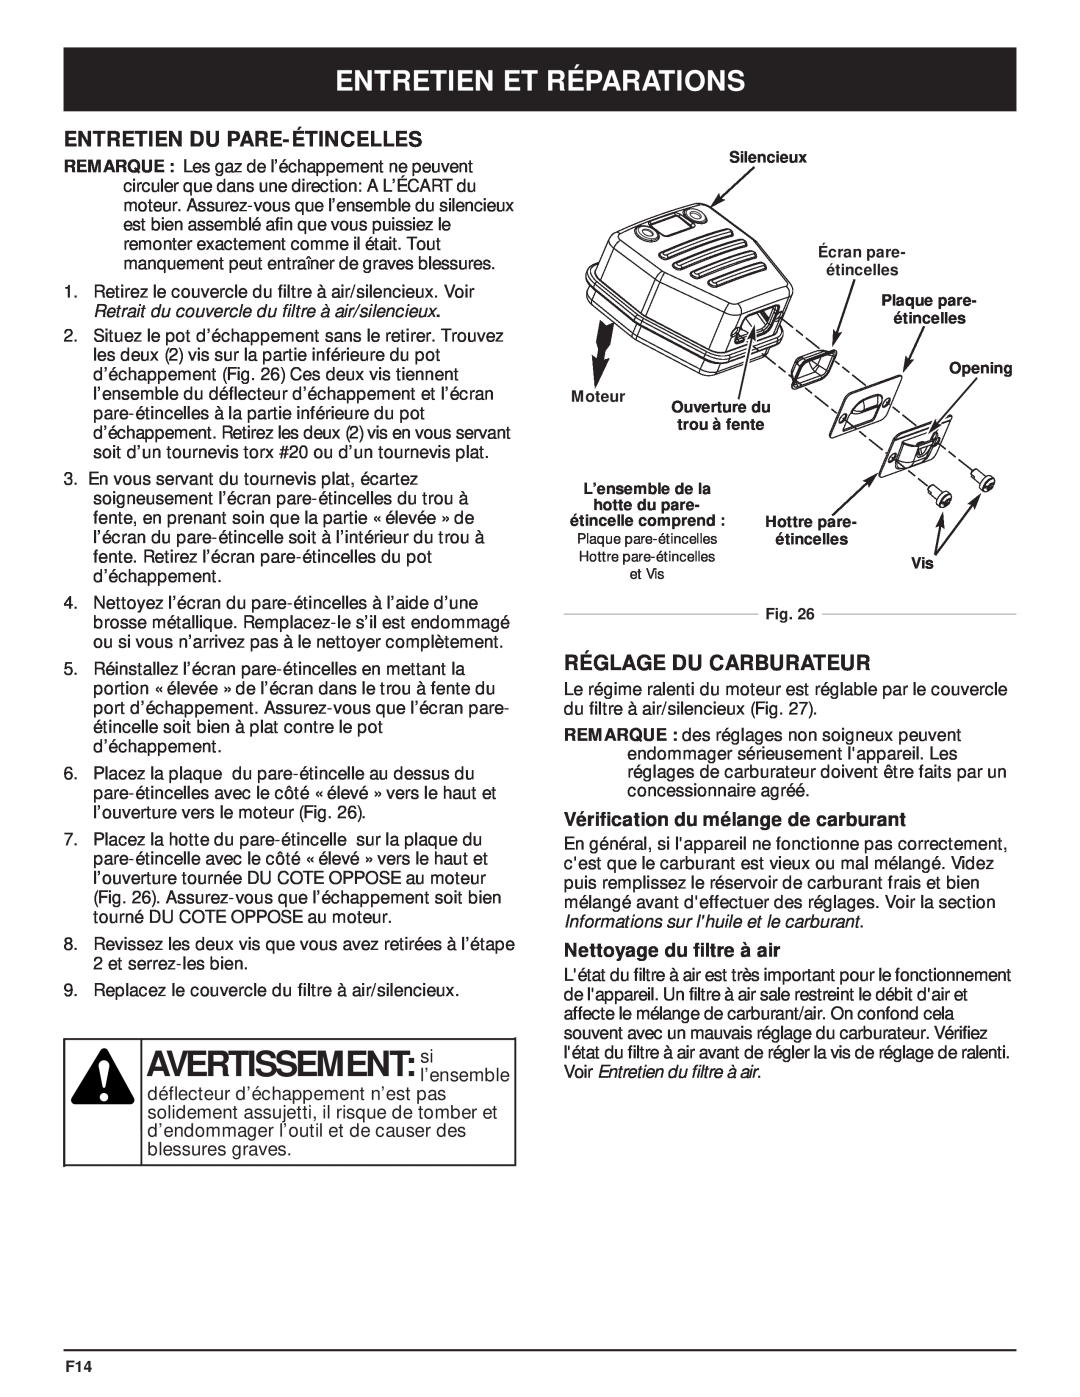 MTD Y28 manual AVERTISSEMENT sil’ensemble, Entretien Du Pare-Étincelles, Réglage Du Carburateur, Nettoyage du filtre à air 